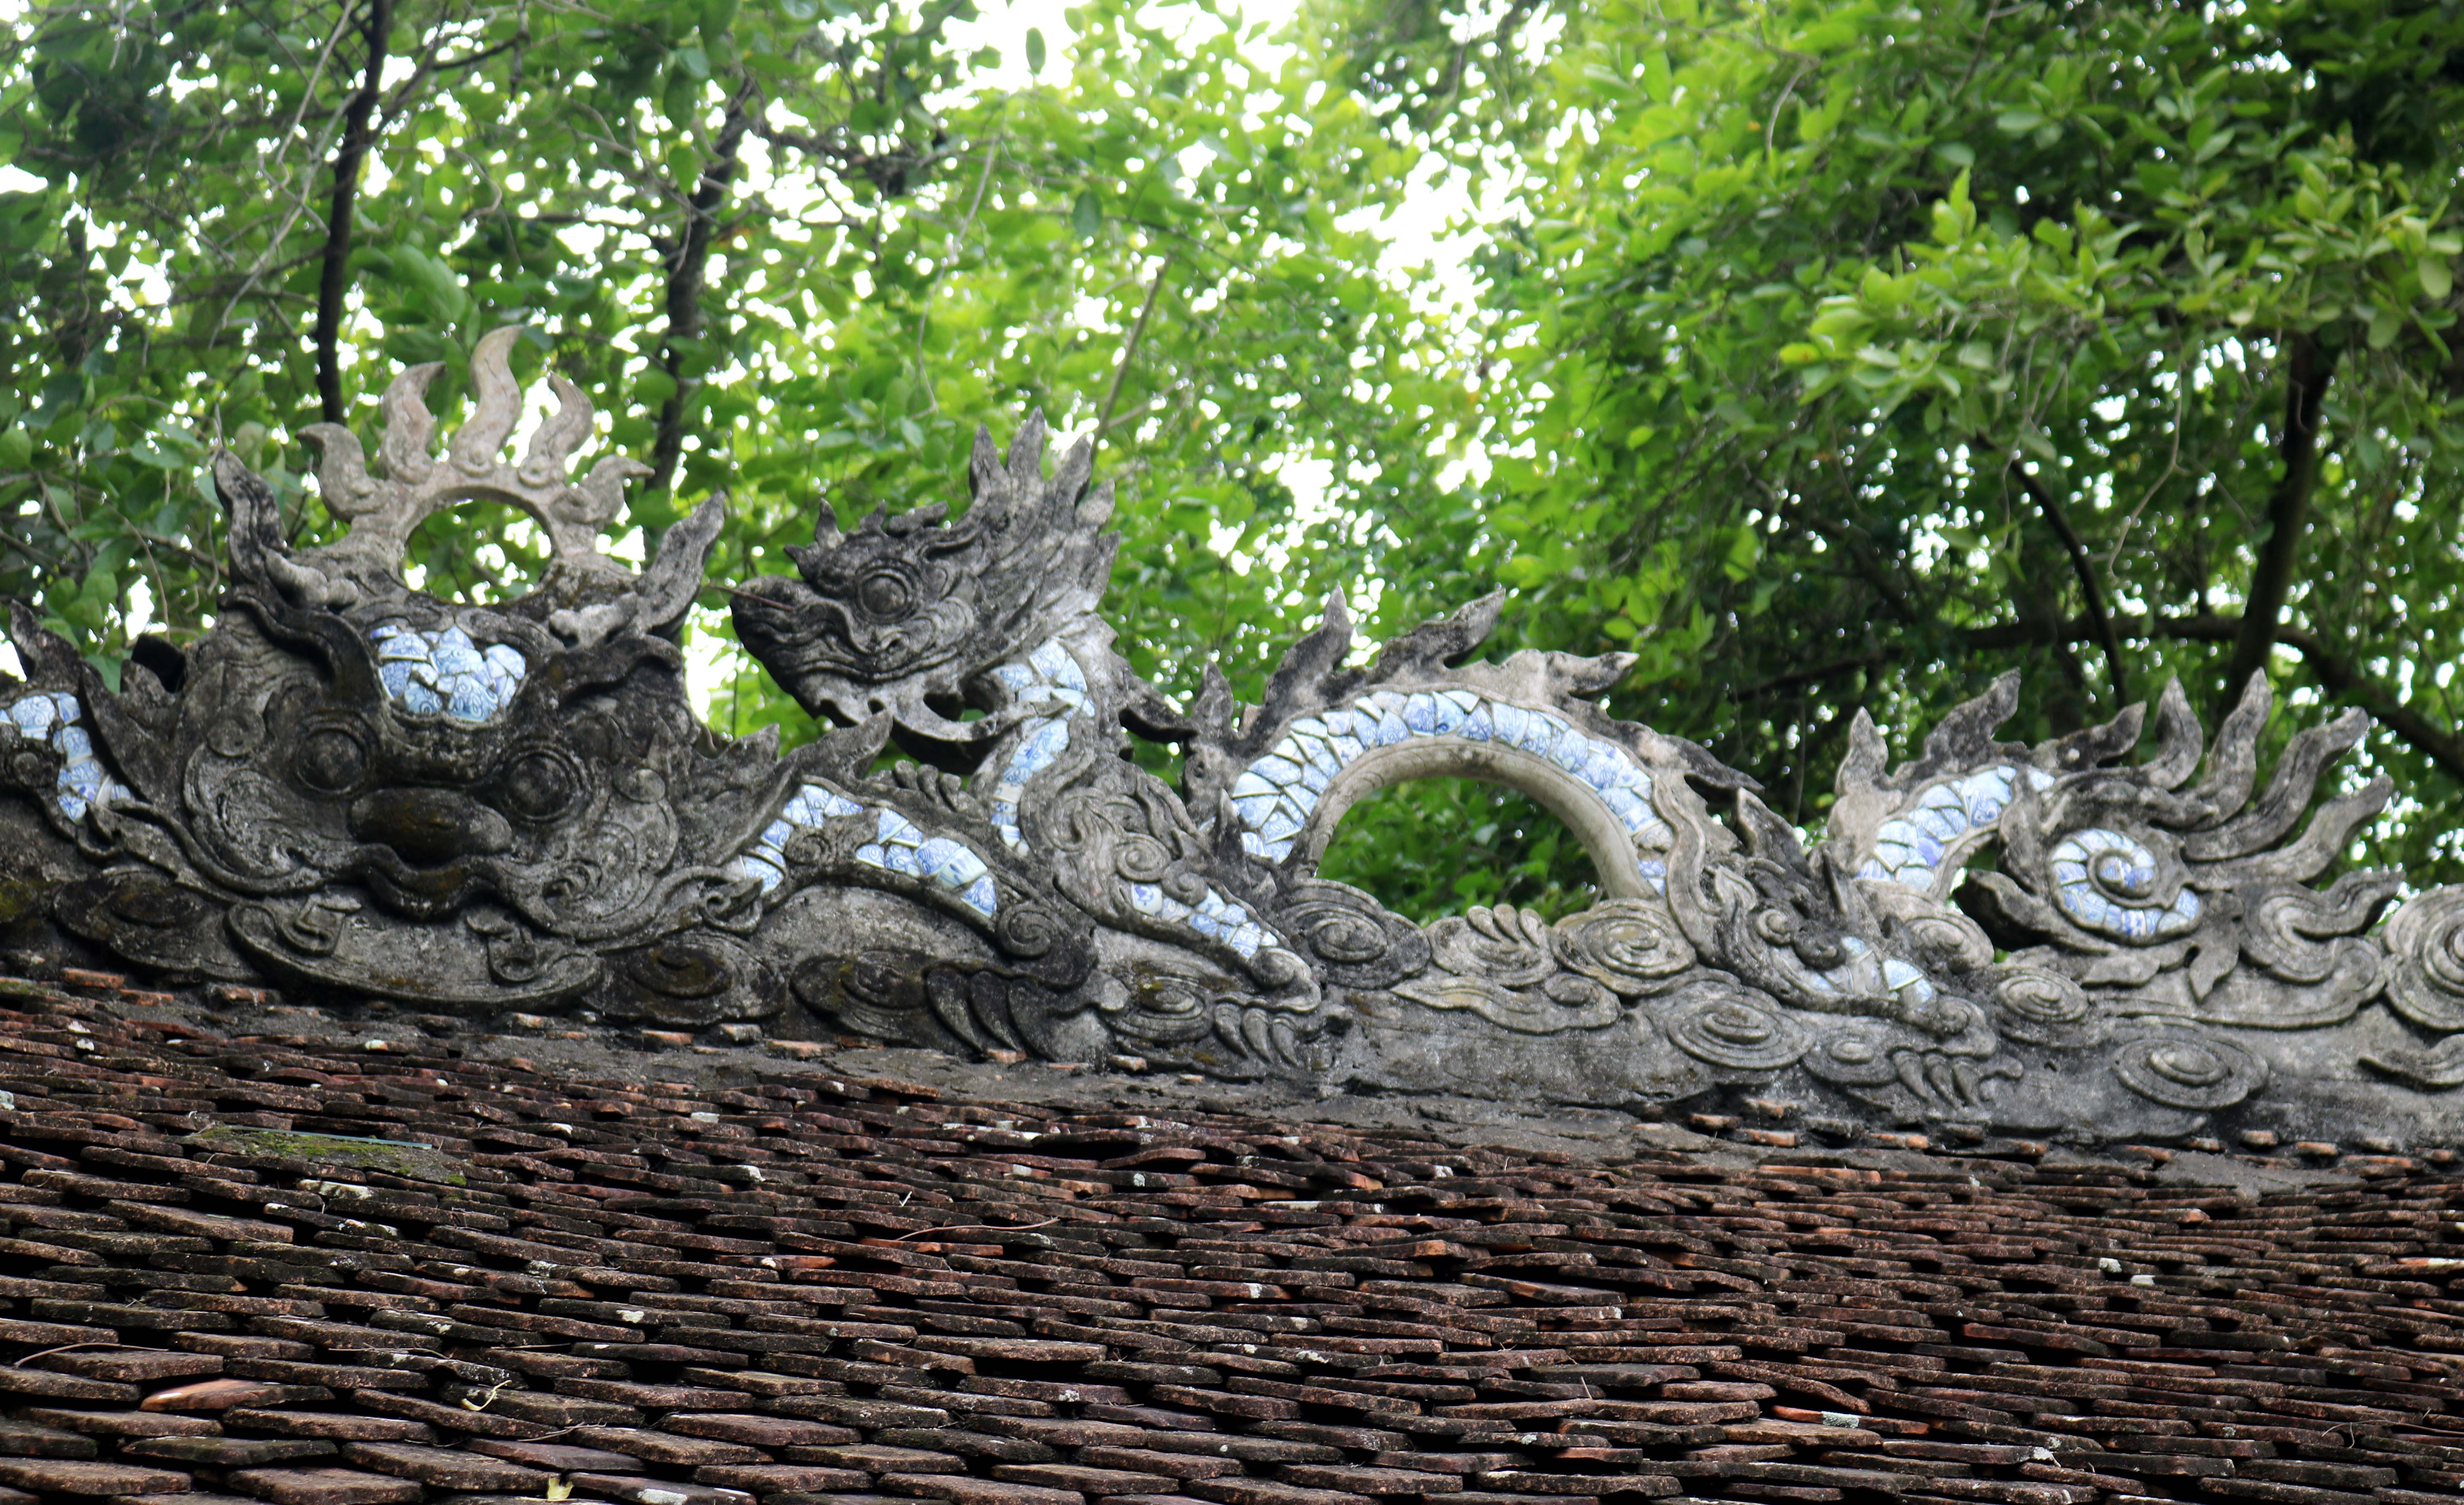 Nét đẹp độc đáo của đền Thanh Liệt không chỉ thể hiện ở phần gỗ với nghệ thuật điêu khắc tinh xảo, mà trên mái ngói của các điện thờ cũng được trang trí hấp dẫn với những hình lưỡng long chầu nguyệt sống động.